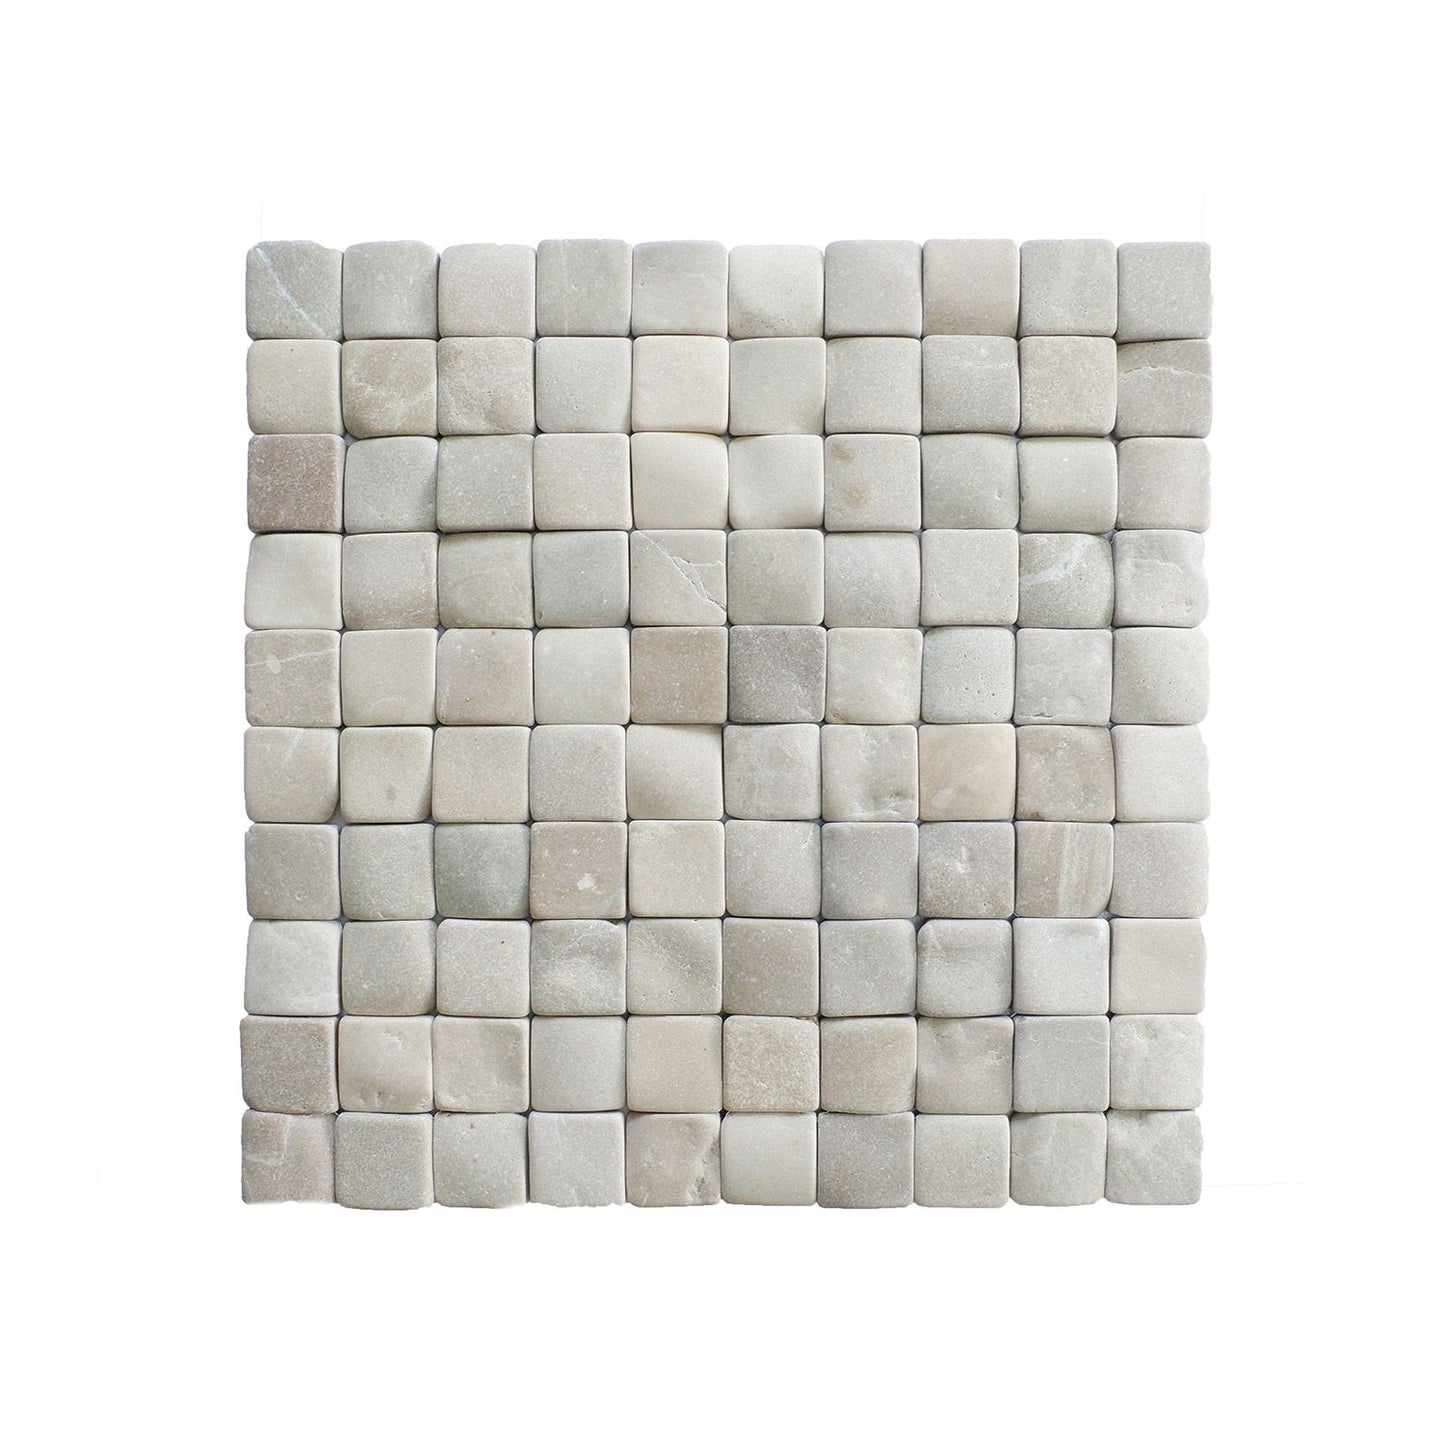 Molar 3 Tan Natural Stone Mosaic Wall & Floor Tile